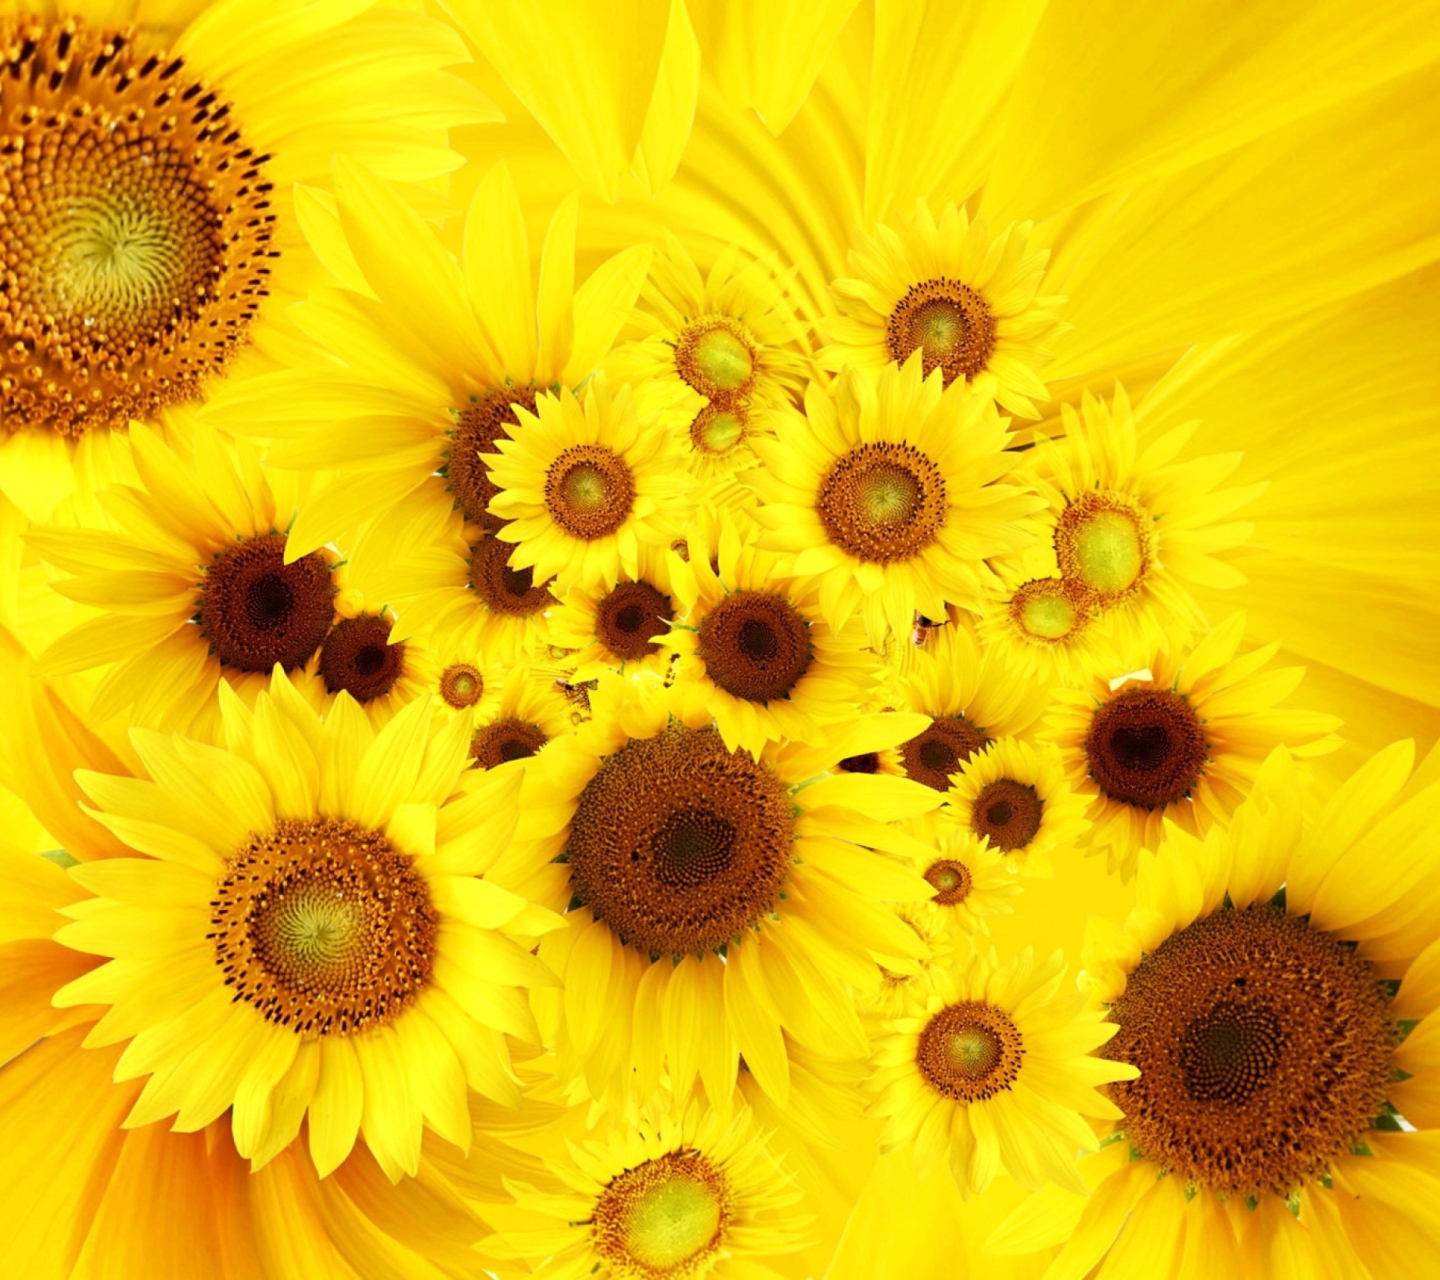 Cool Sunflowers wallpaper 1440x1280